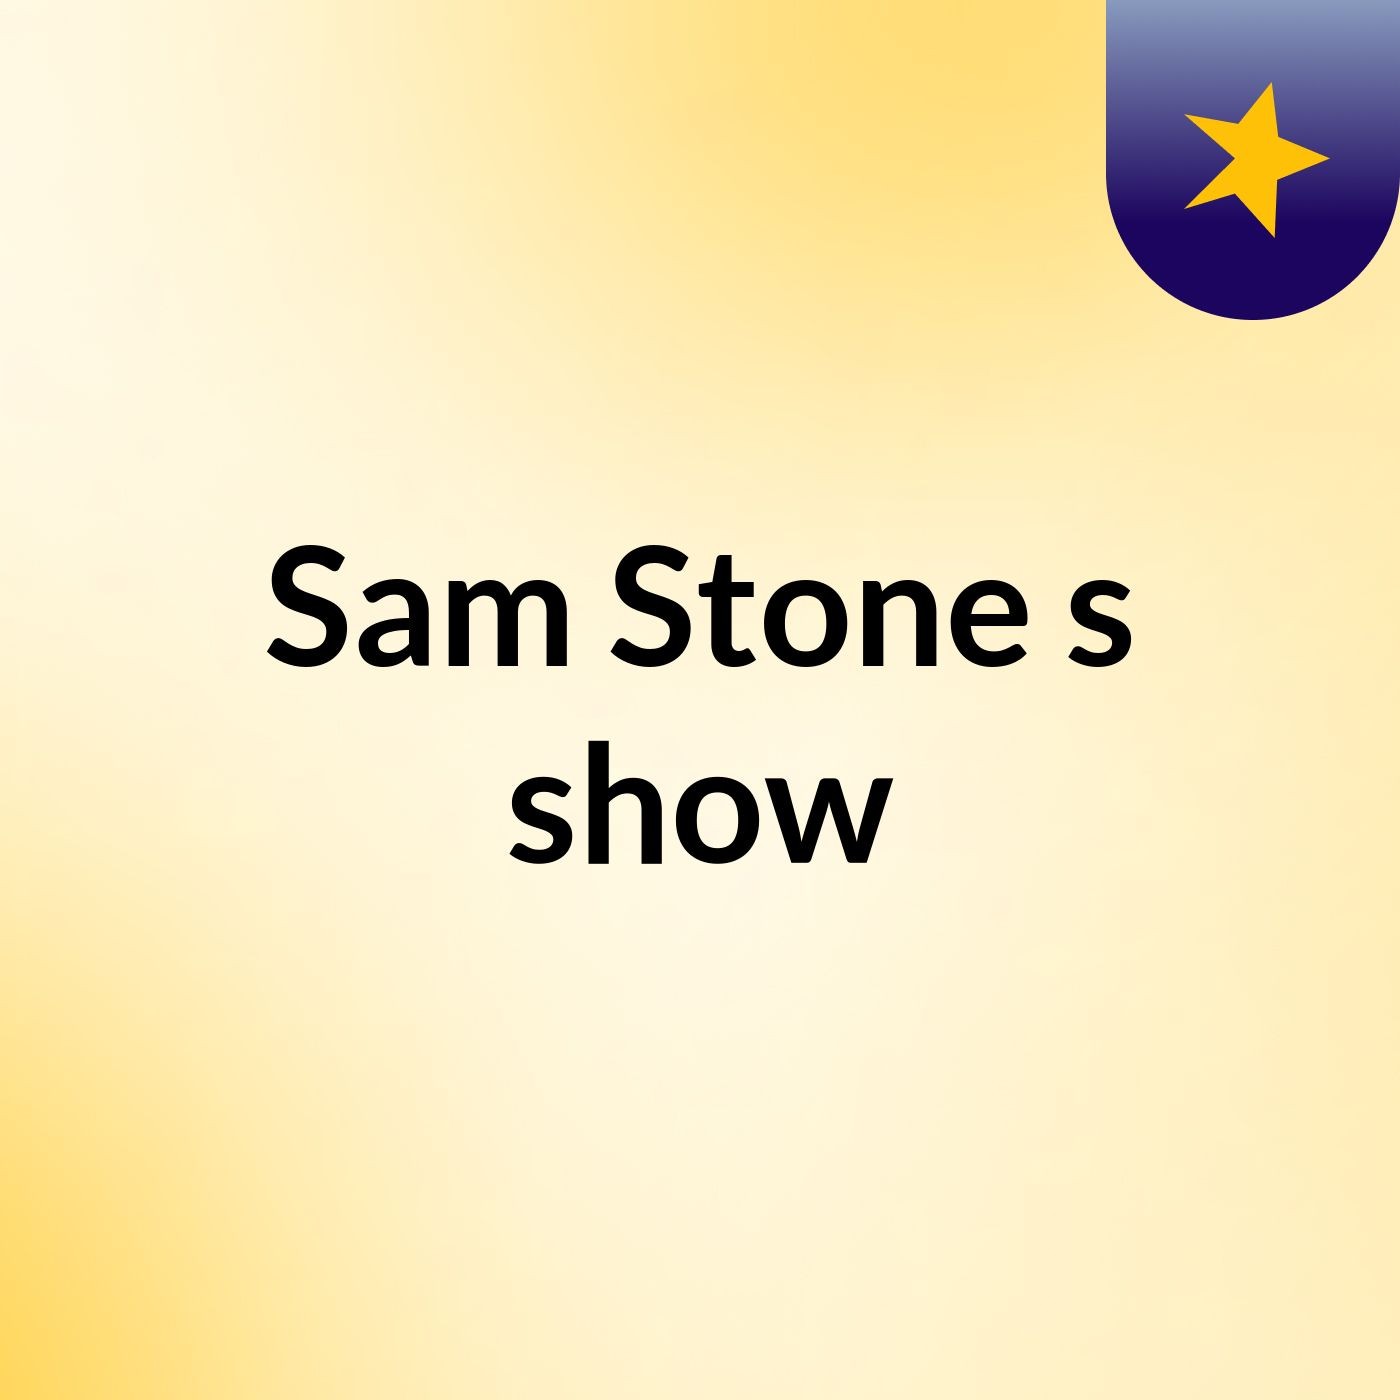 Sam Stone's show